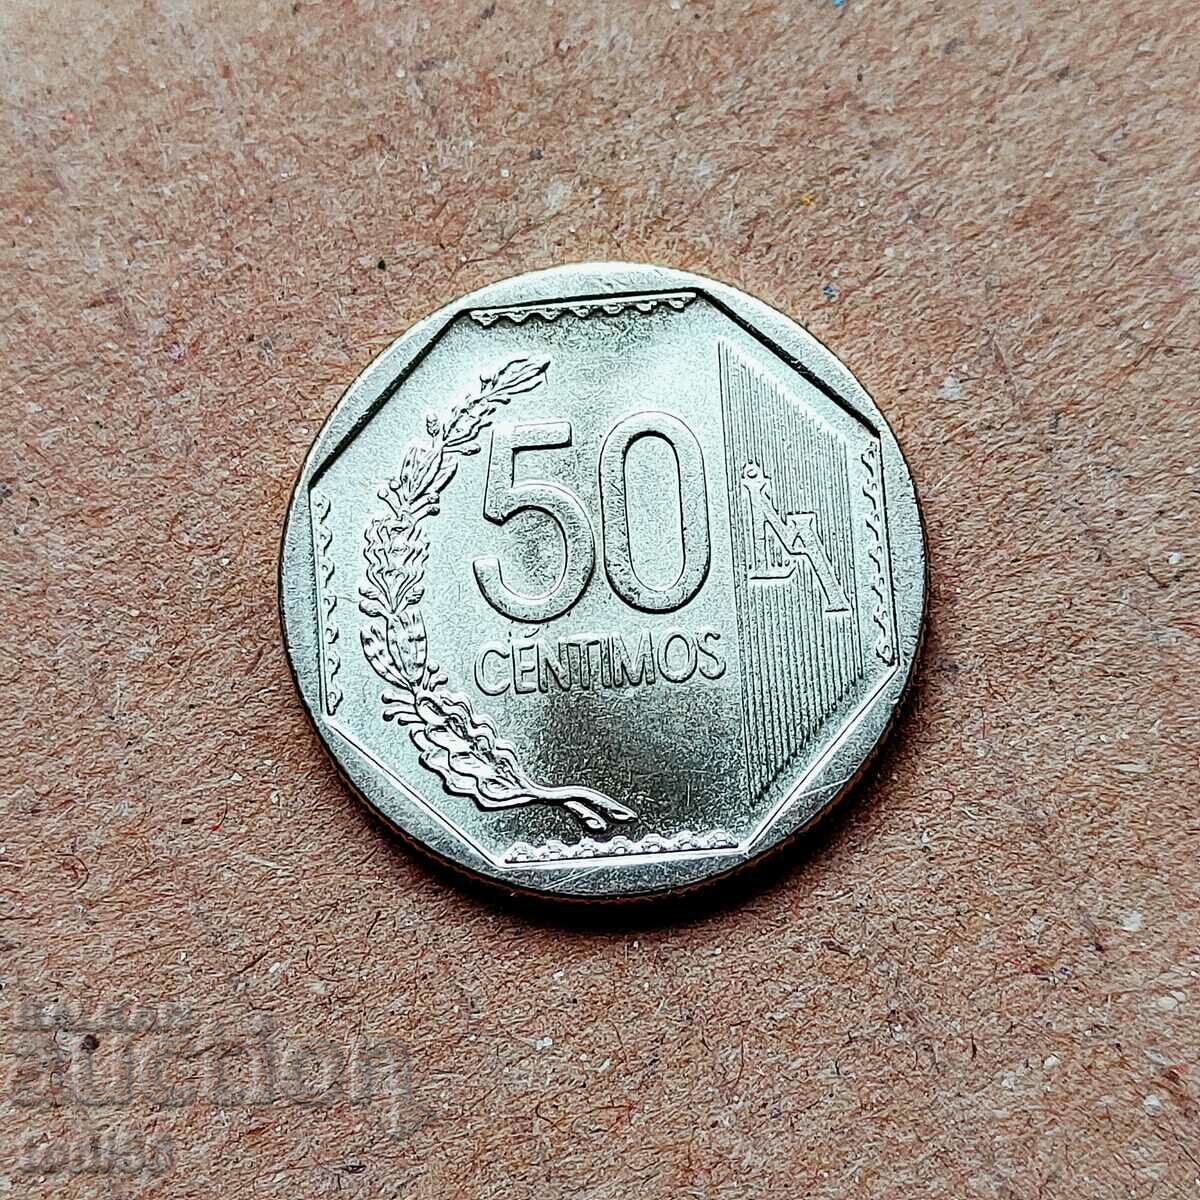 Peru - 50 centimos 2007 UNC